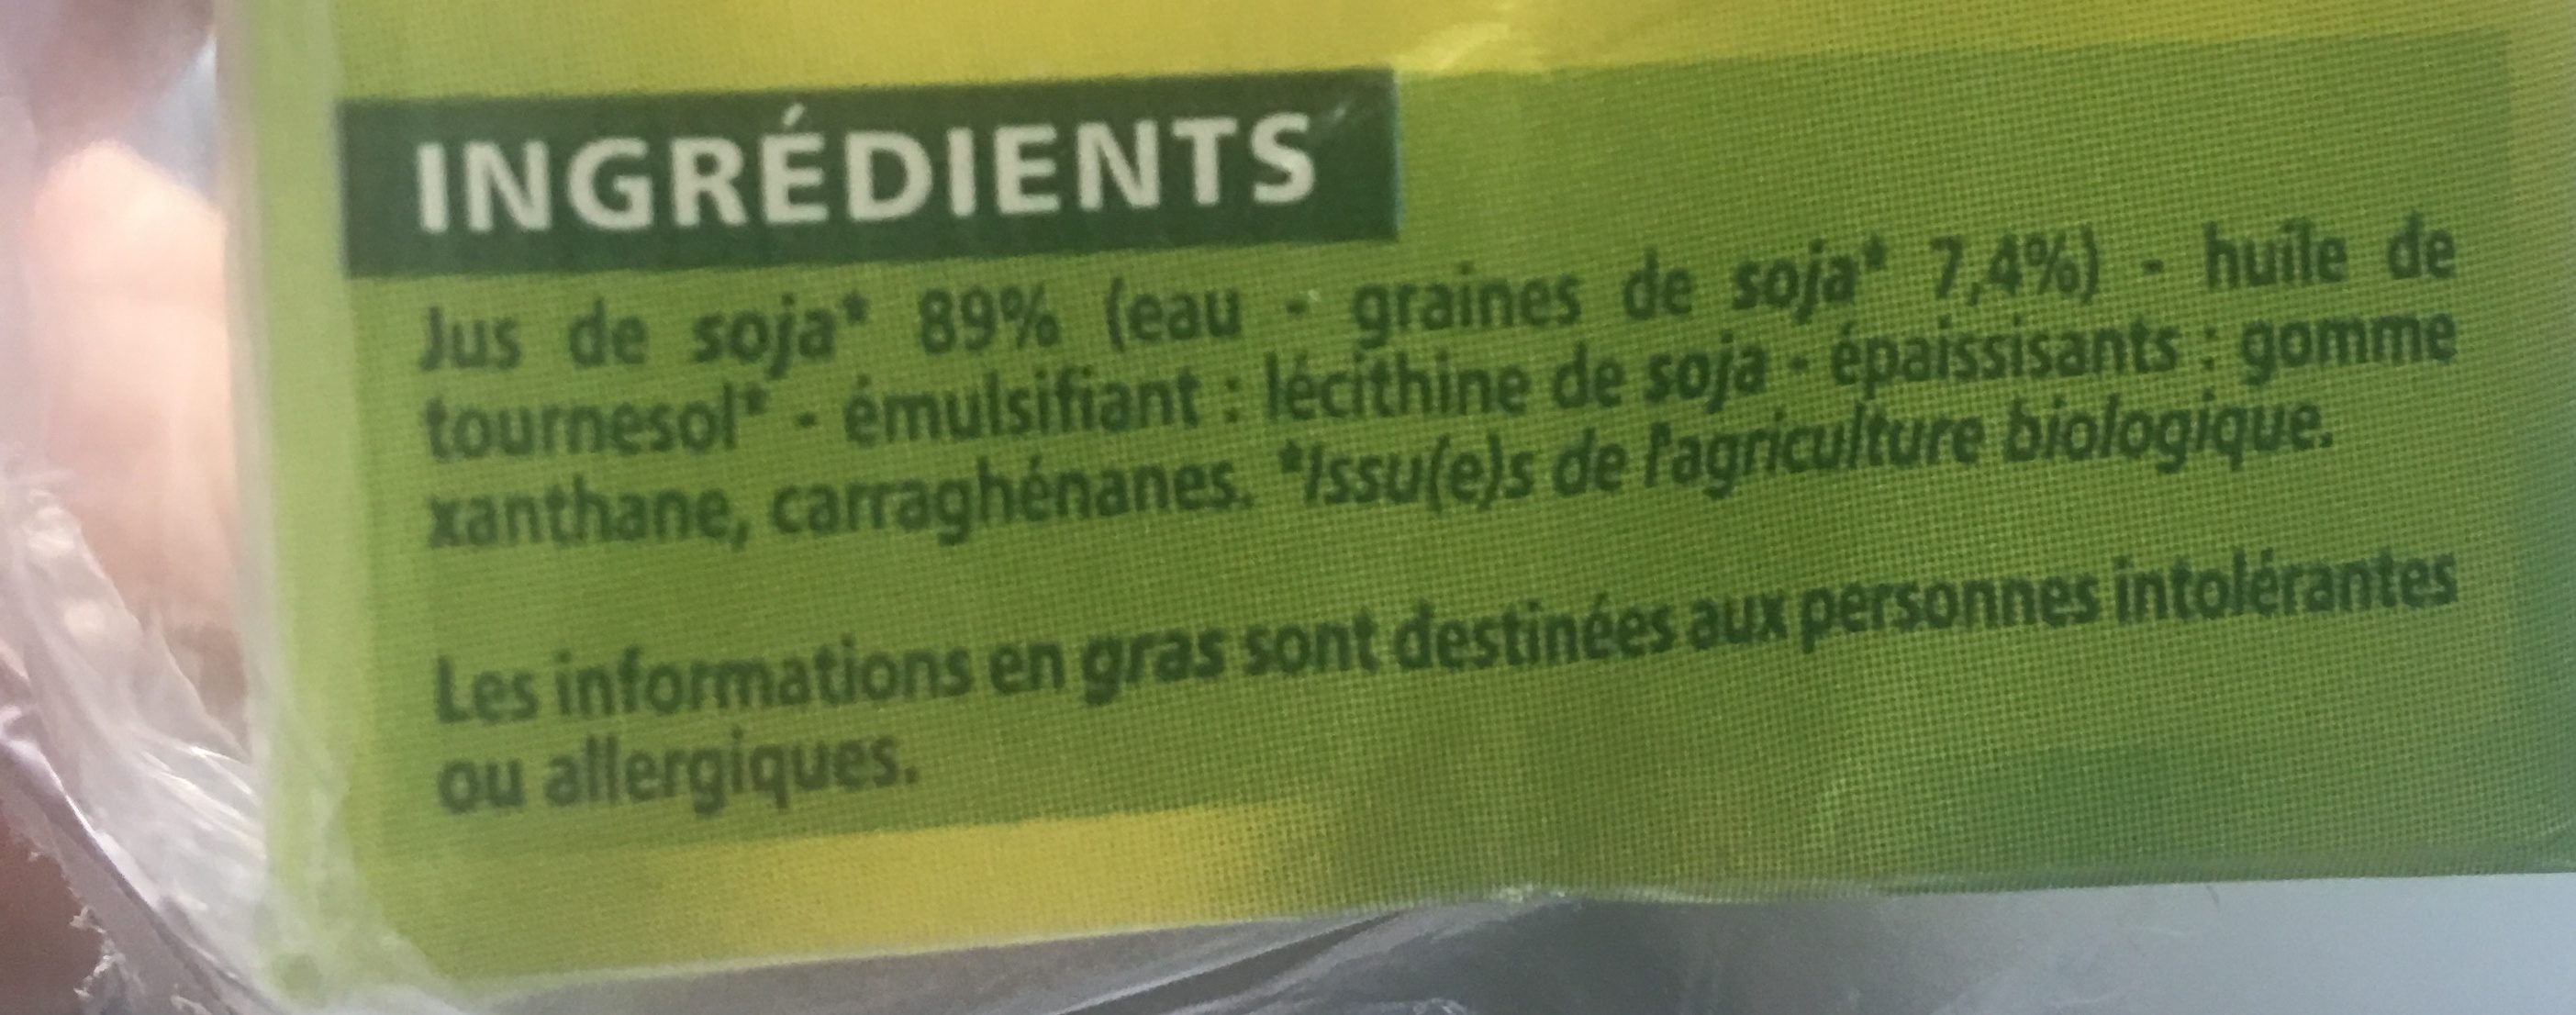 Bio Soja cuisine - Ingrediënten - fr